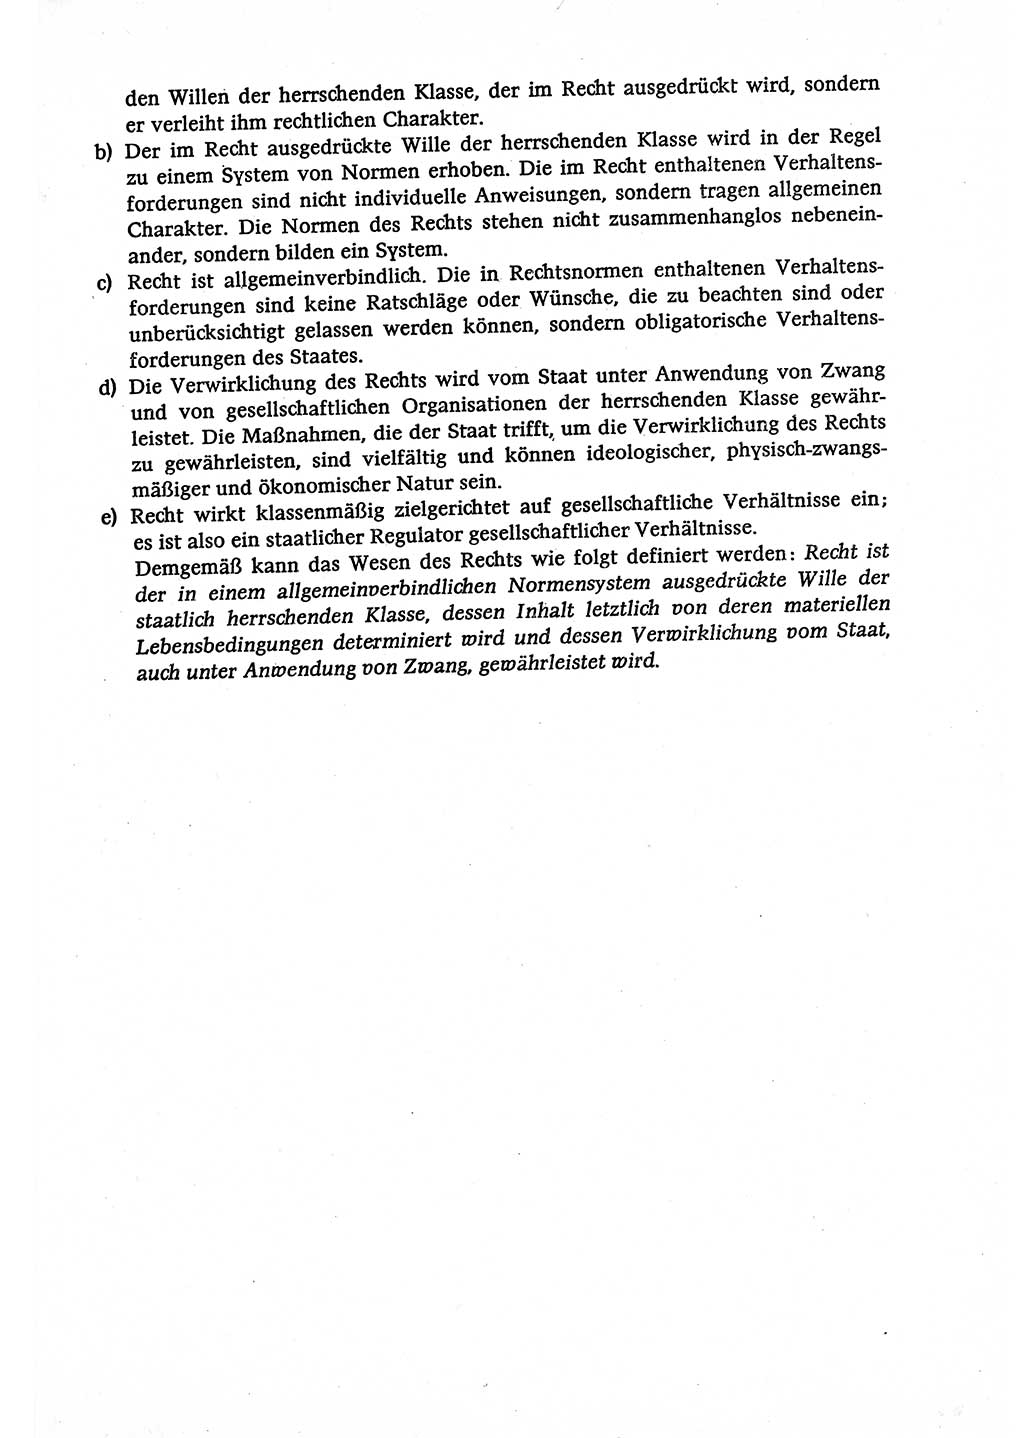 Marxistisch-leninistische (ML) Staats- und Rechtstheorie [Deutsche Demokratische Republik (DDR)], Lehrbuch 1980, Seite 109 (ML St.-R.-Th. DDR Lb. 1980, S. 109)